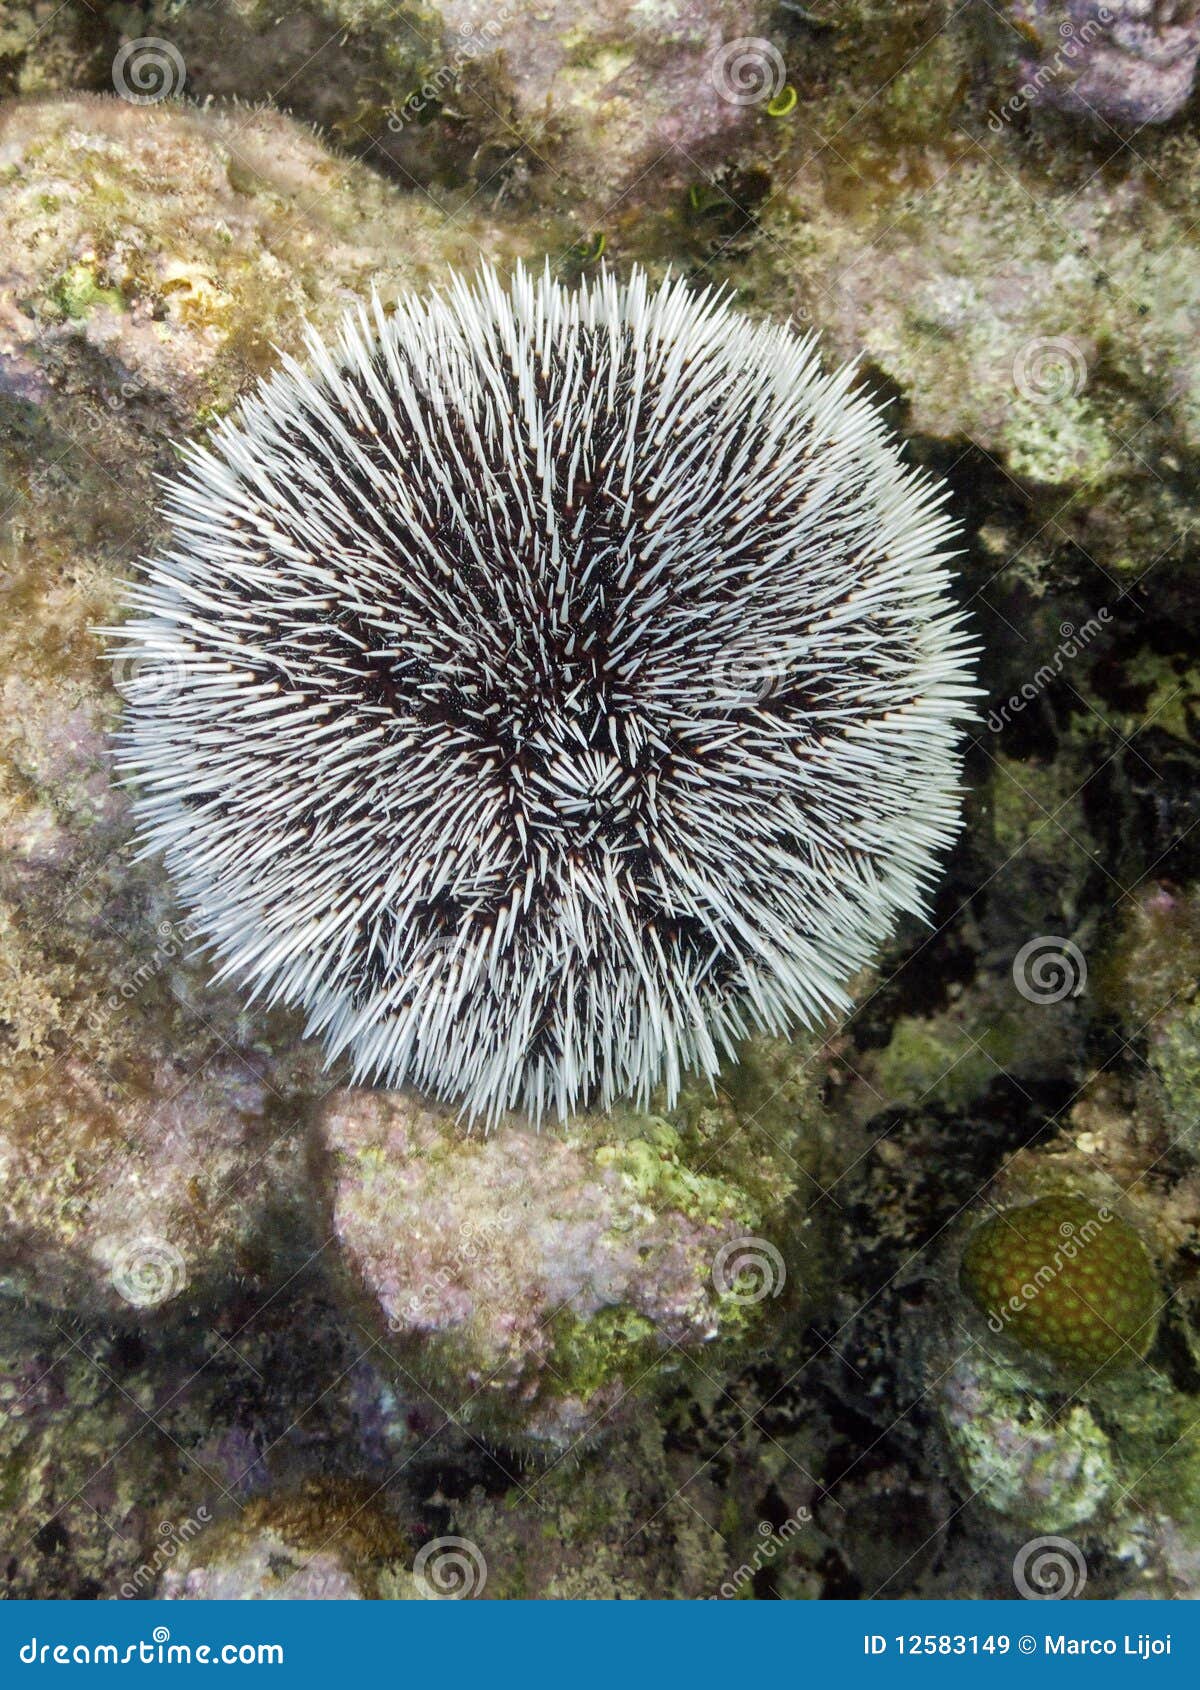 white urchin in cuba